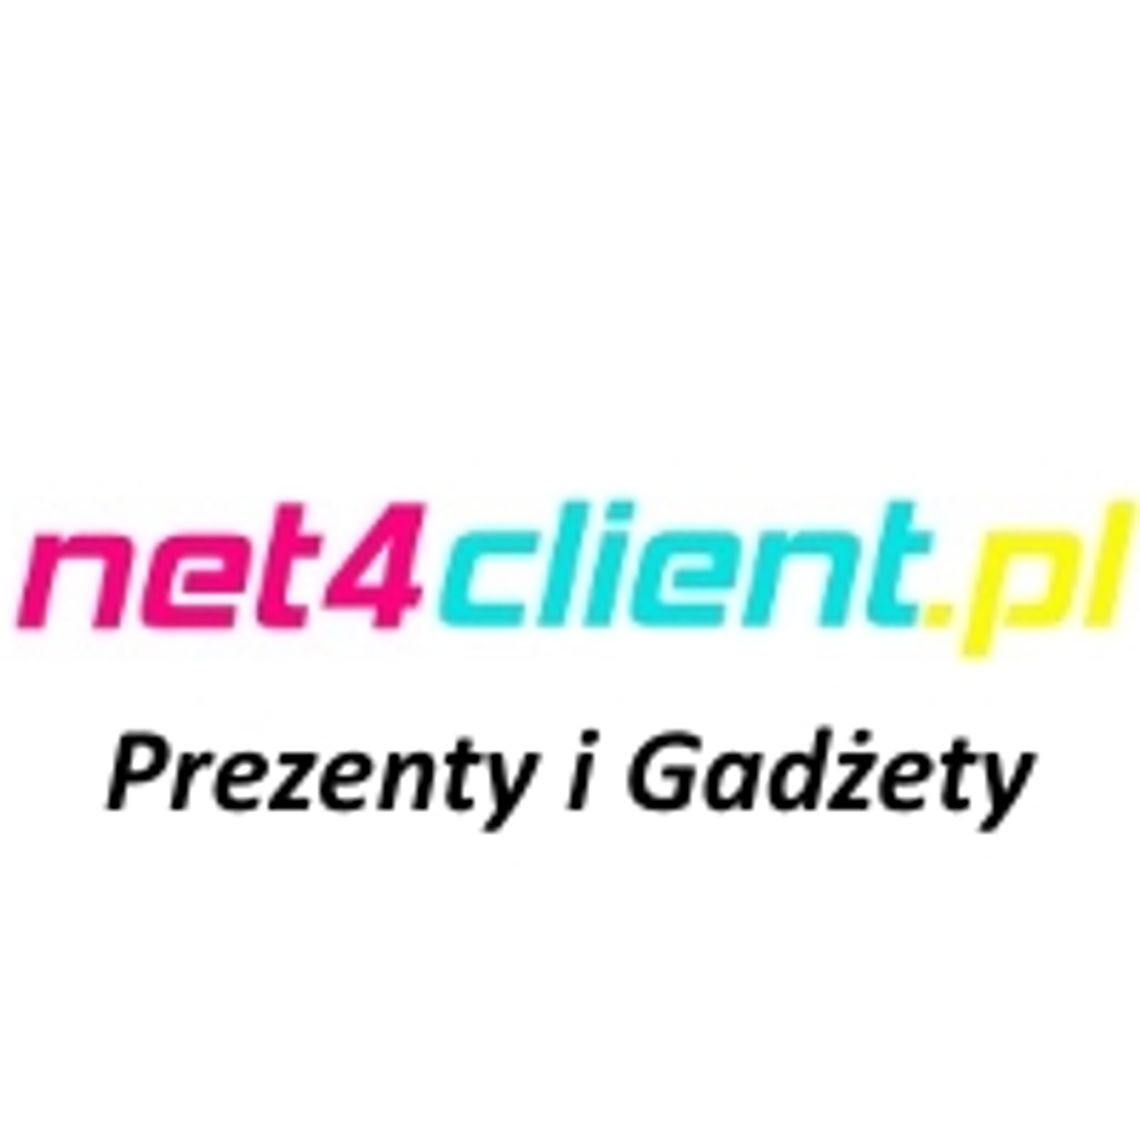 Net4client.pl - internetowy sklep wielobranżowy